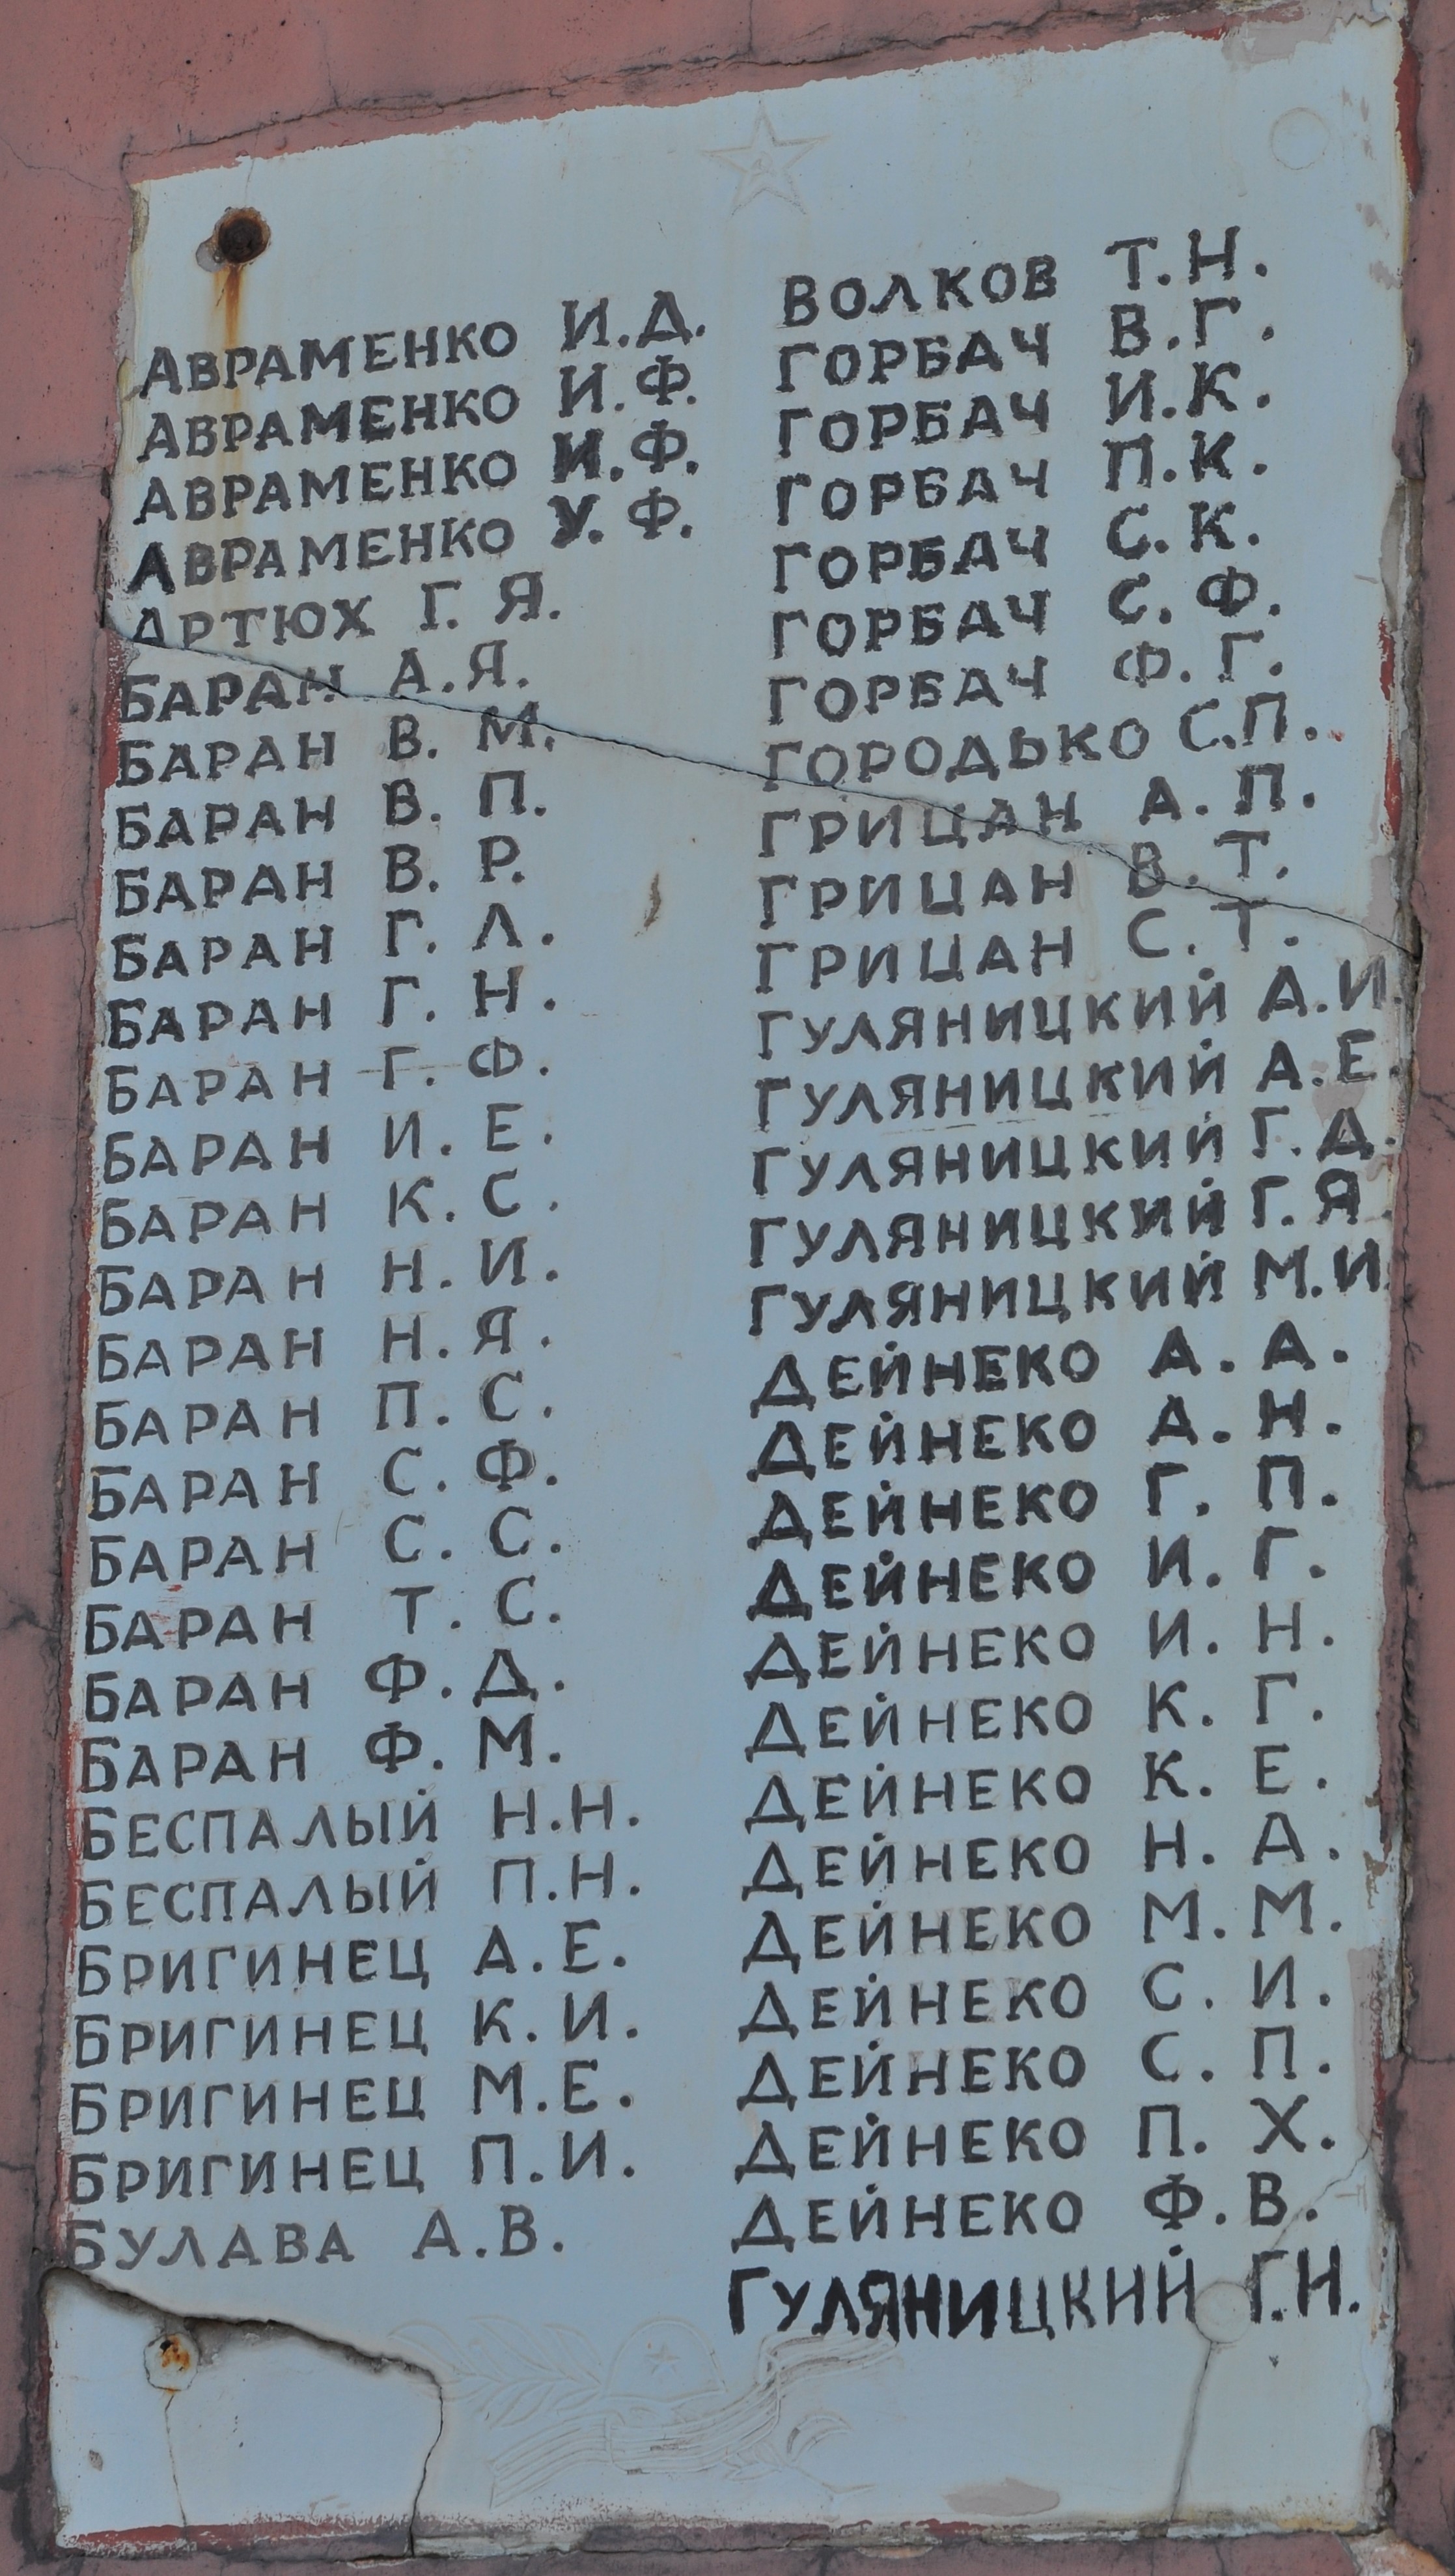 Памятник односельчанам в с. Ерков Козелецкого района